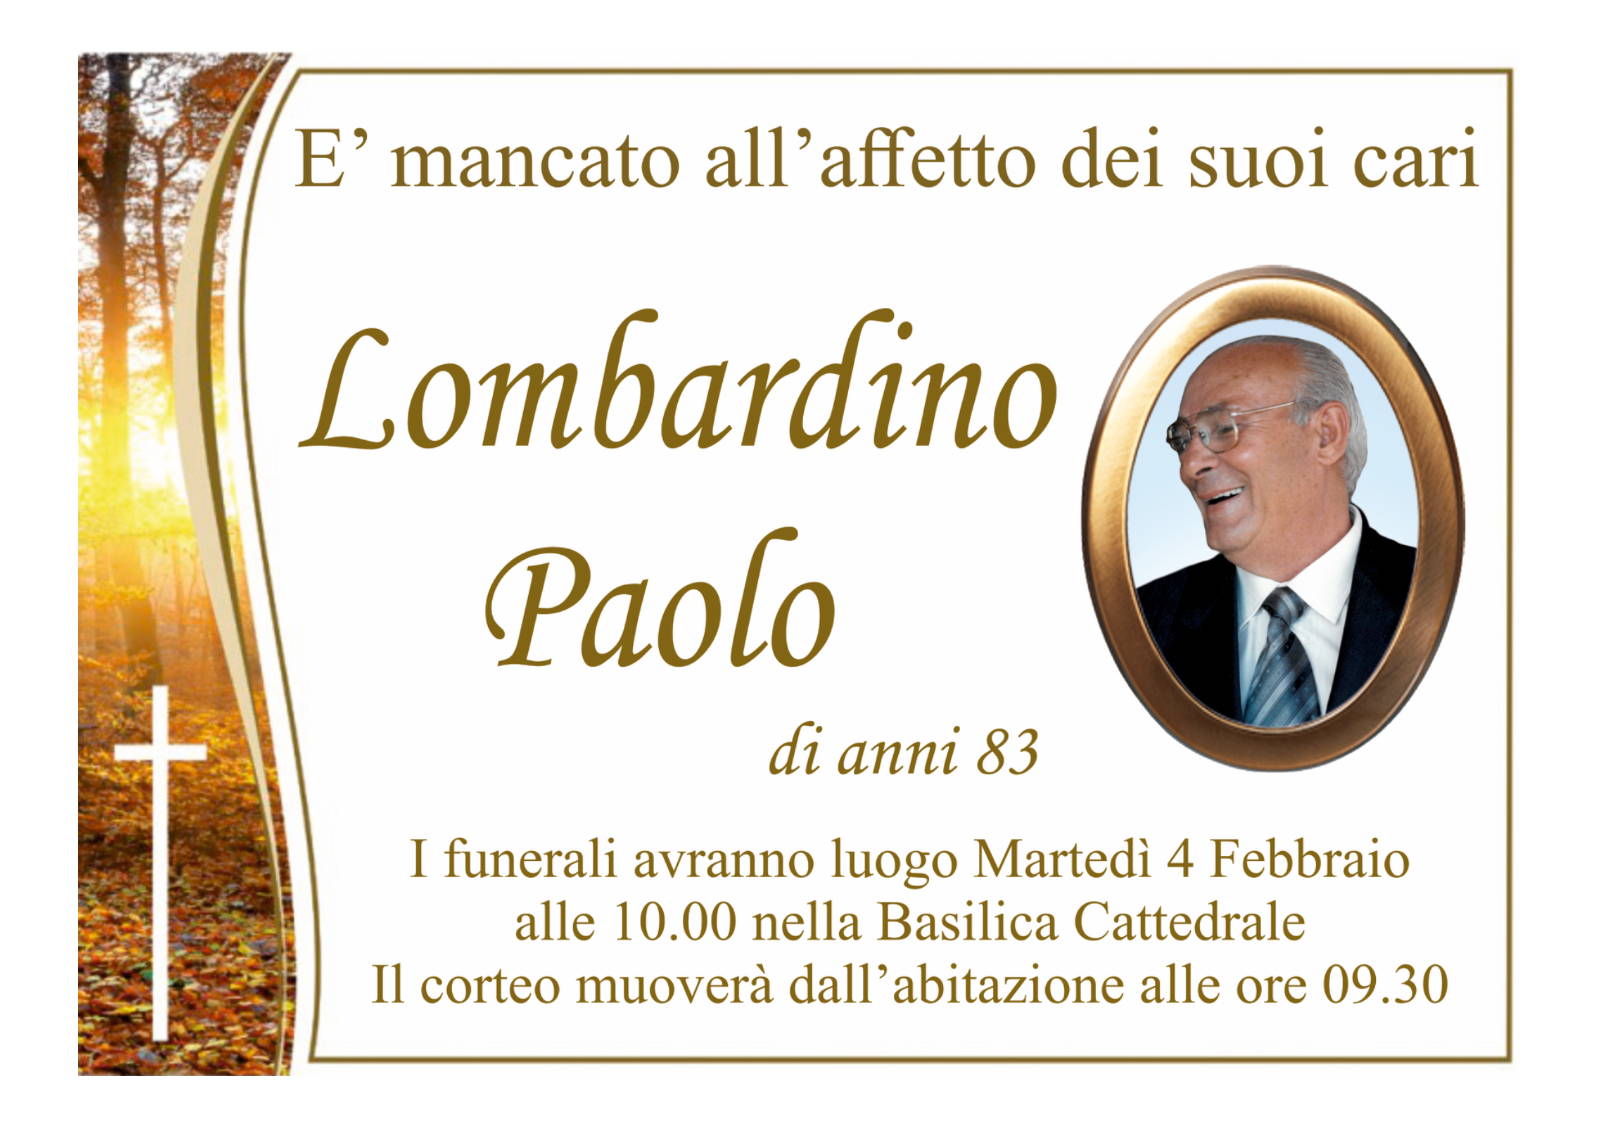 Paolo Lombardino